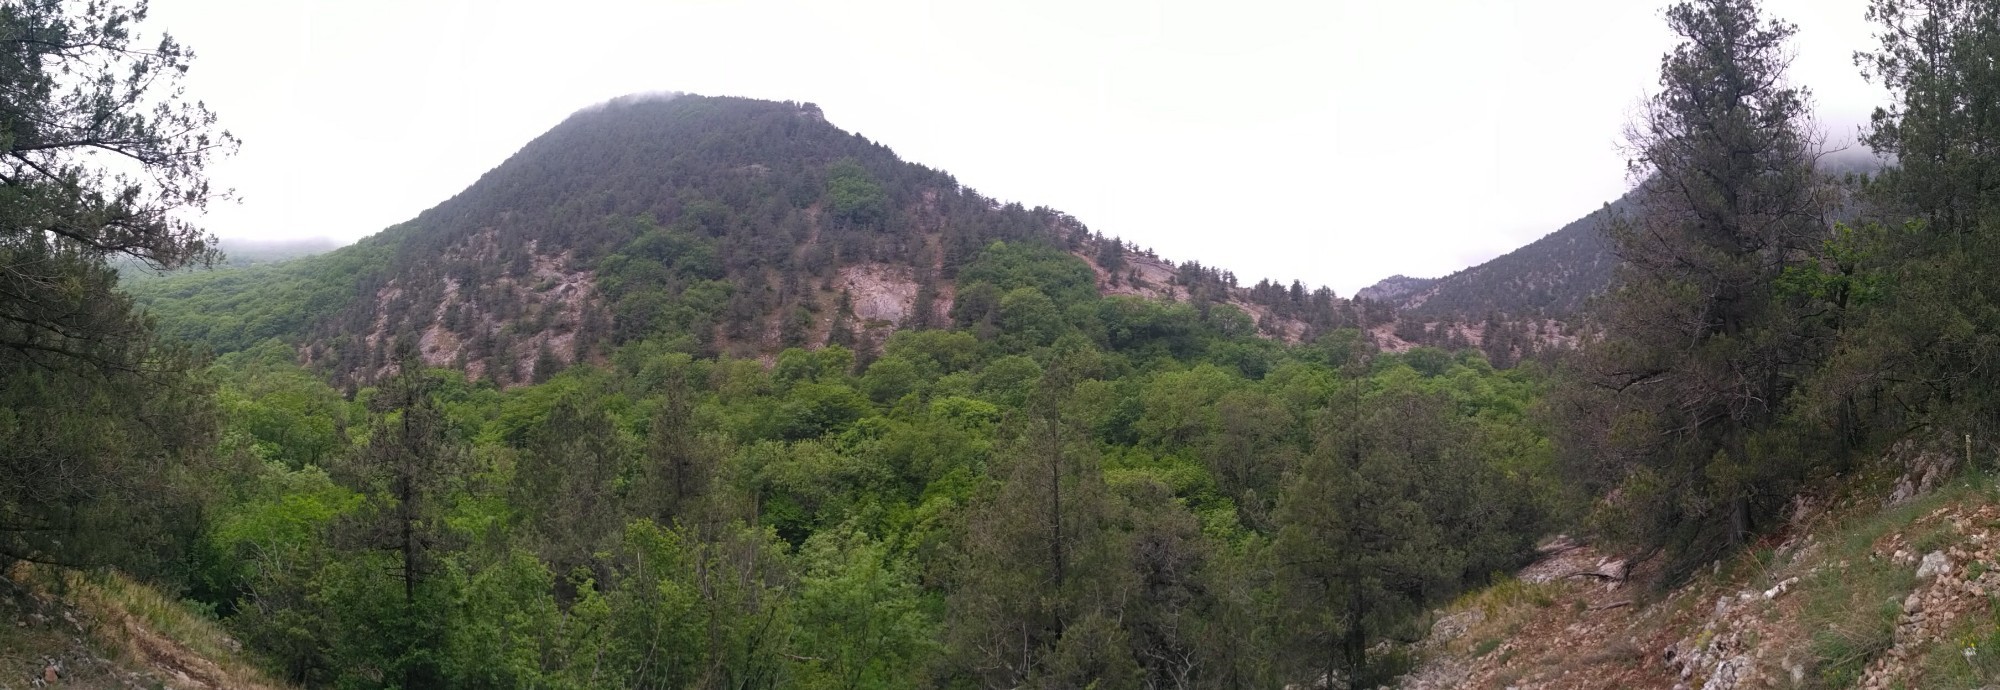 панорама гор над ущельем